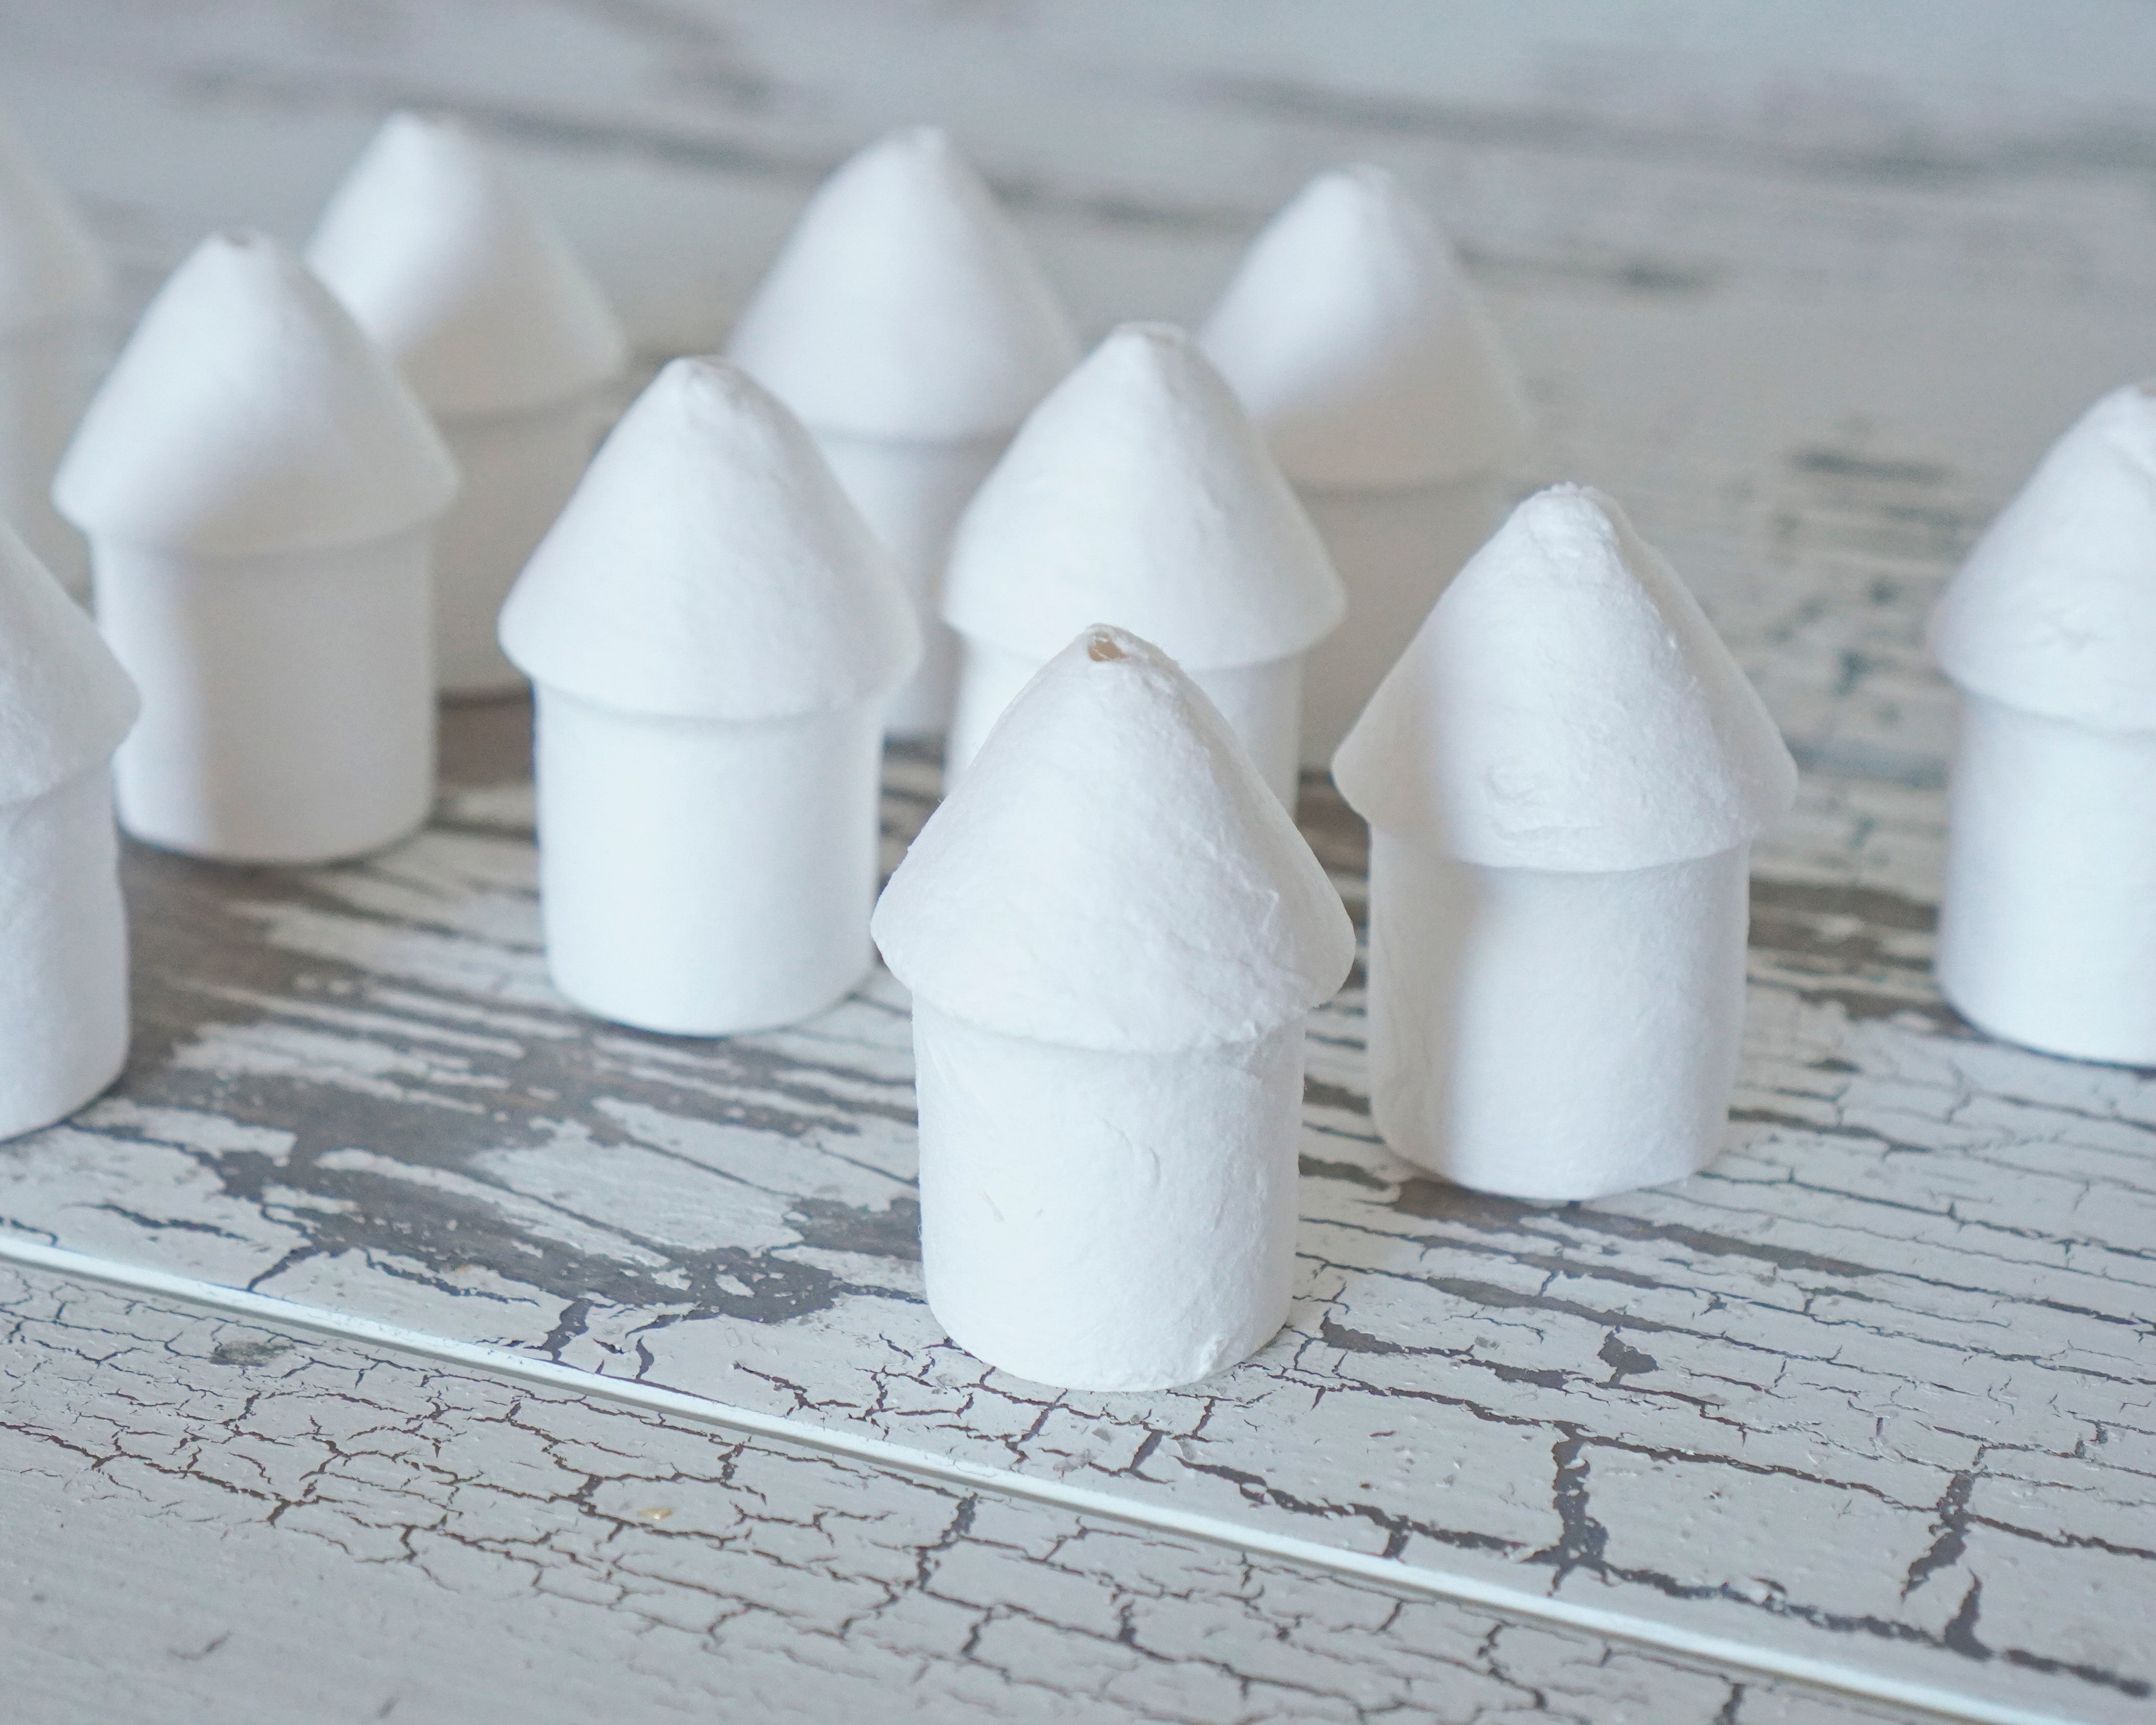 Spun Cotton Fairy House / Birdhouse - 50mm Miniature Round Hut, 12 Pcs.